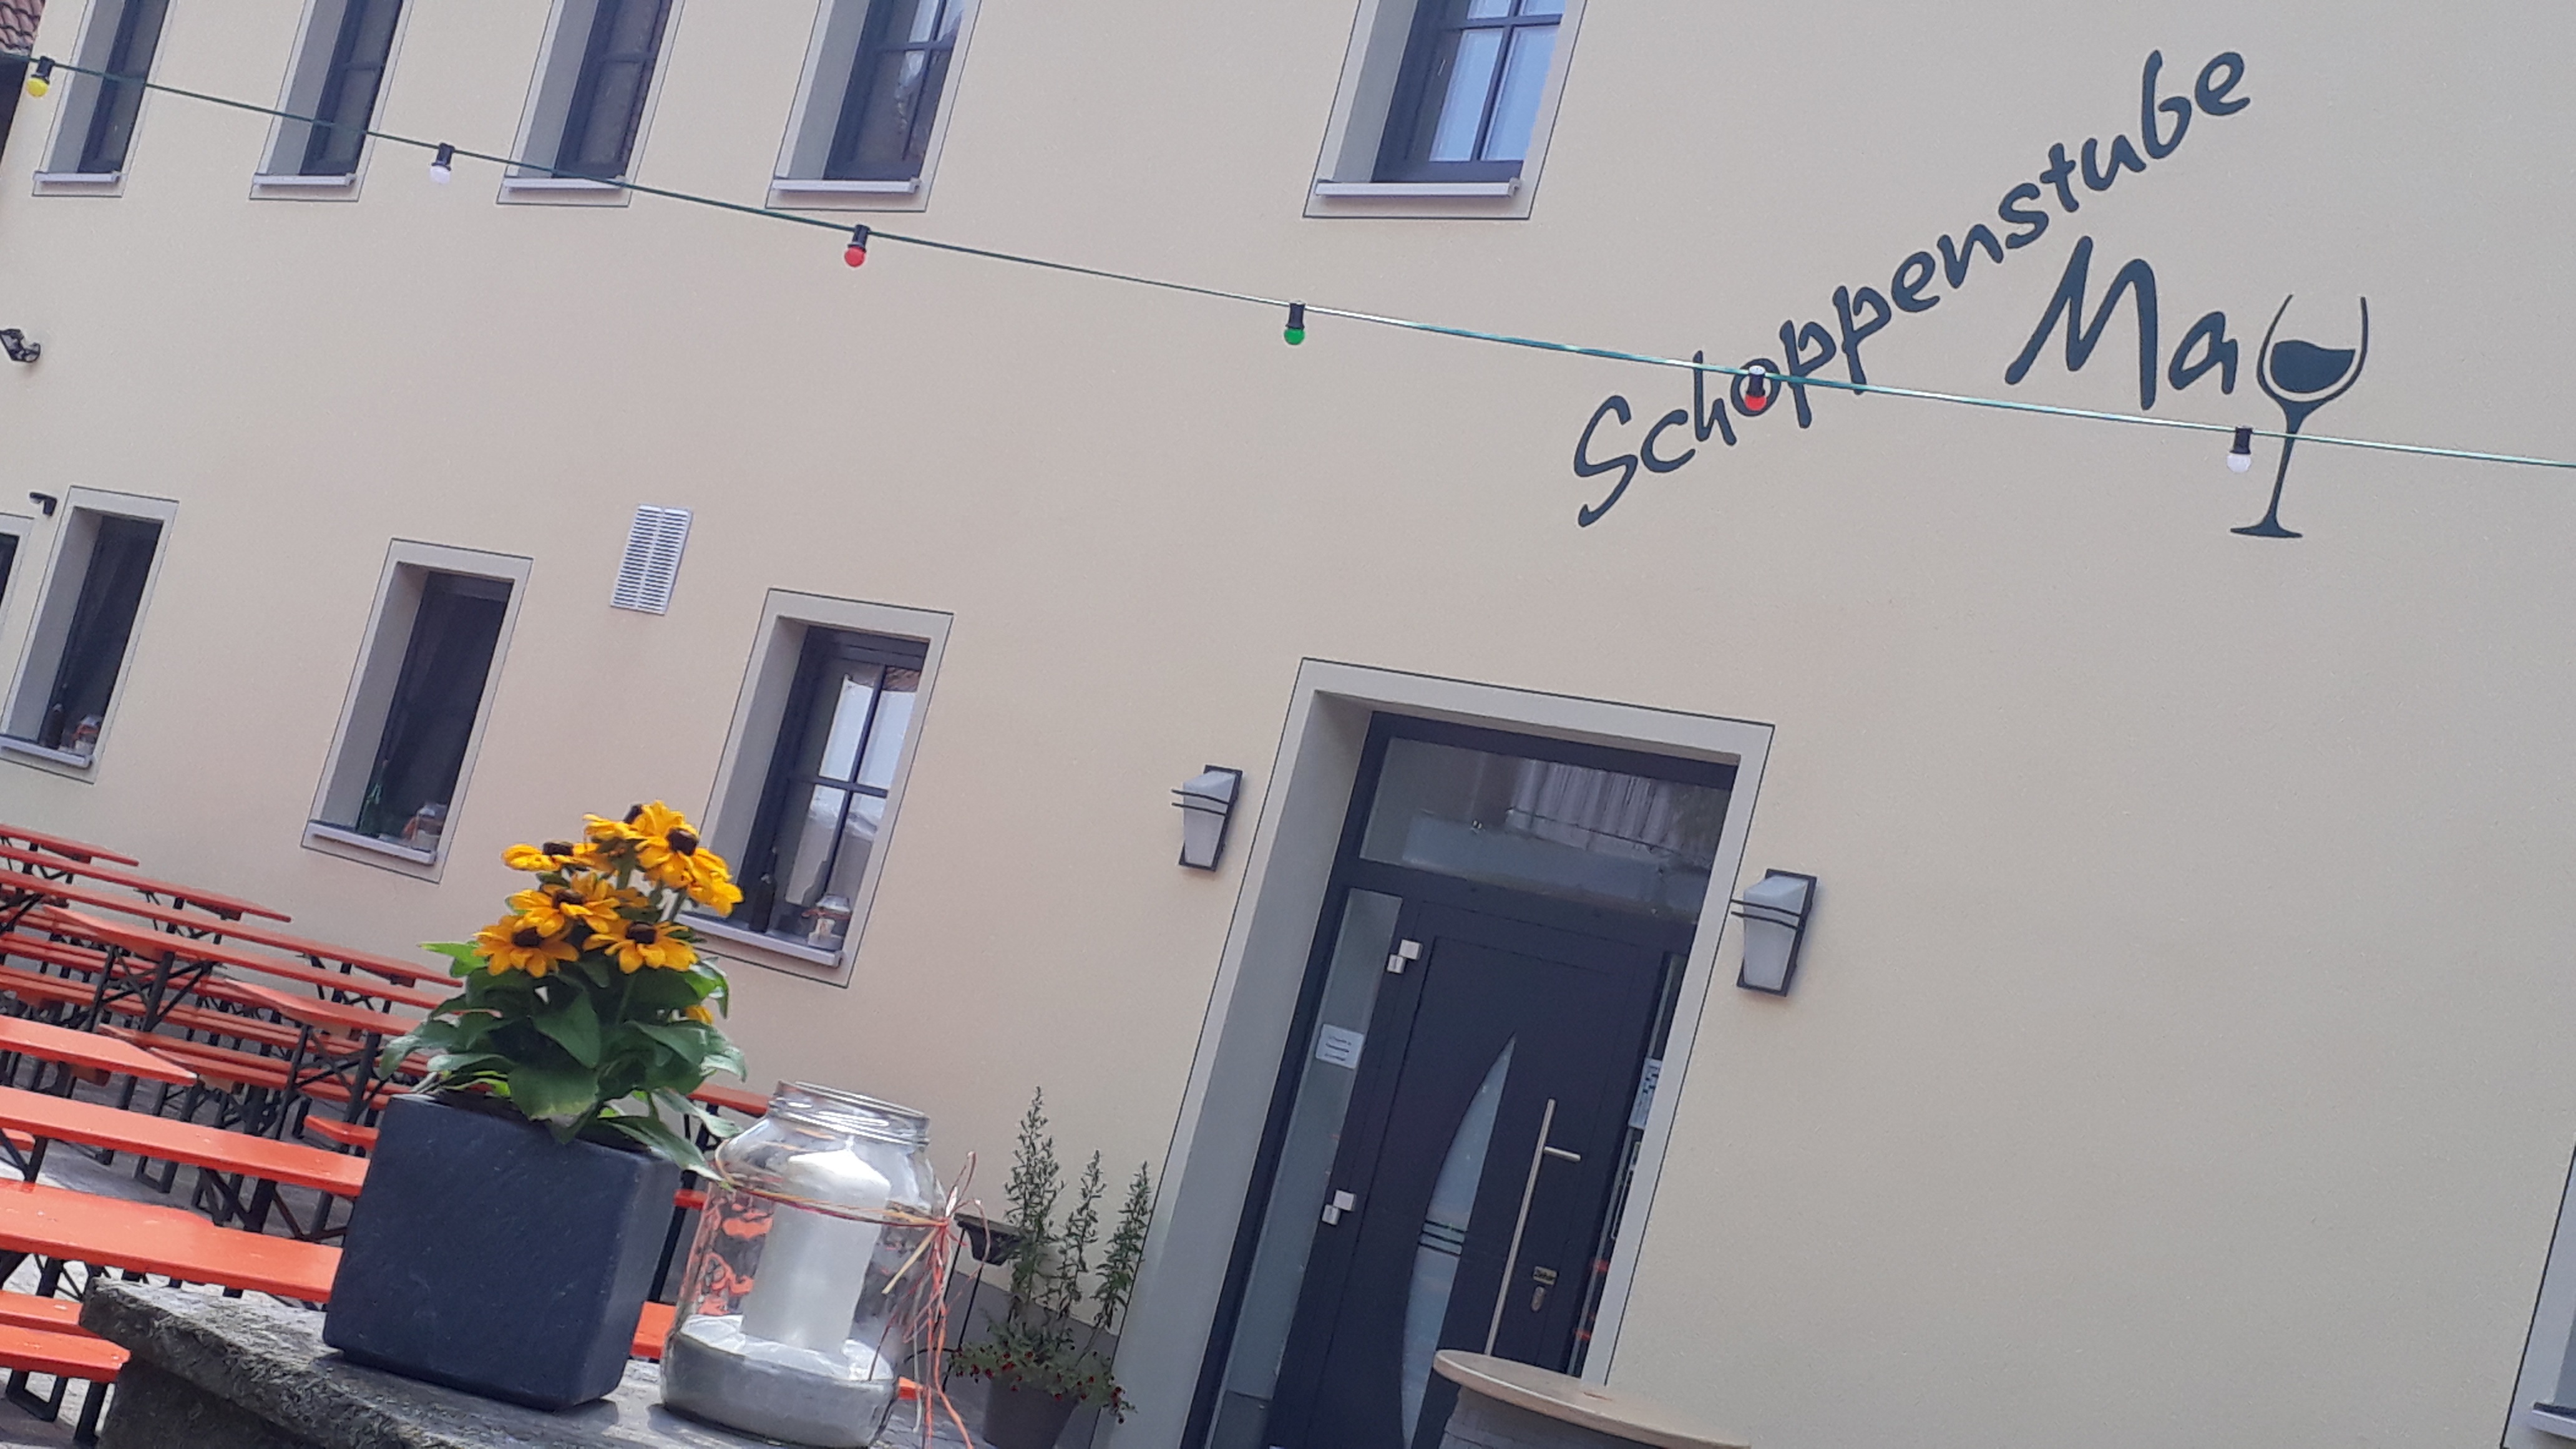 Schoppenstube May (Weigenheim). Appartements Bachu Ferienhaus in Deutschland